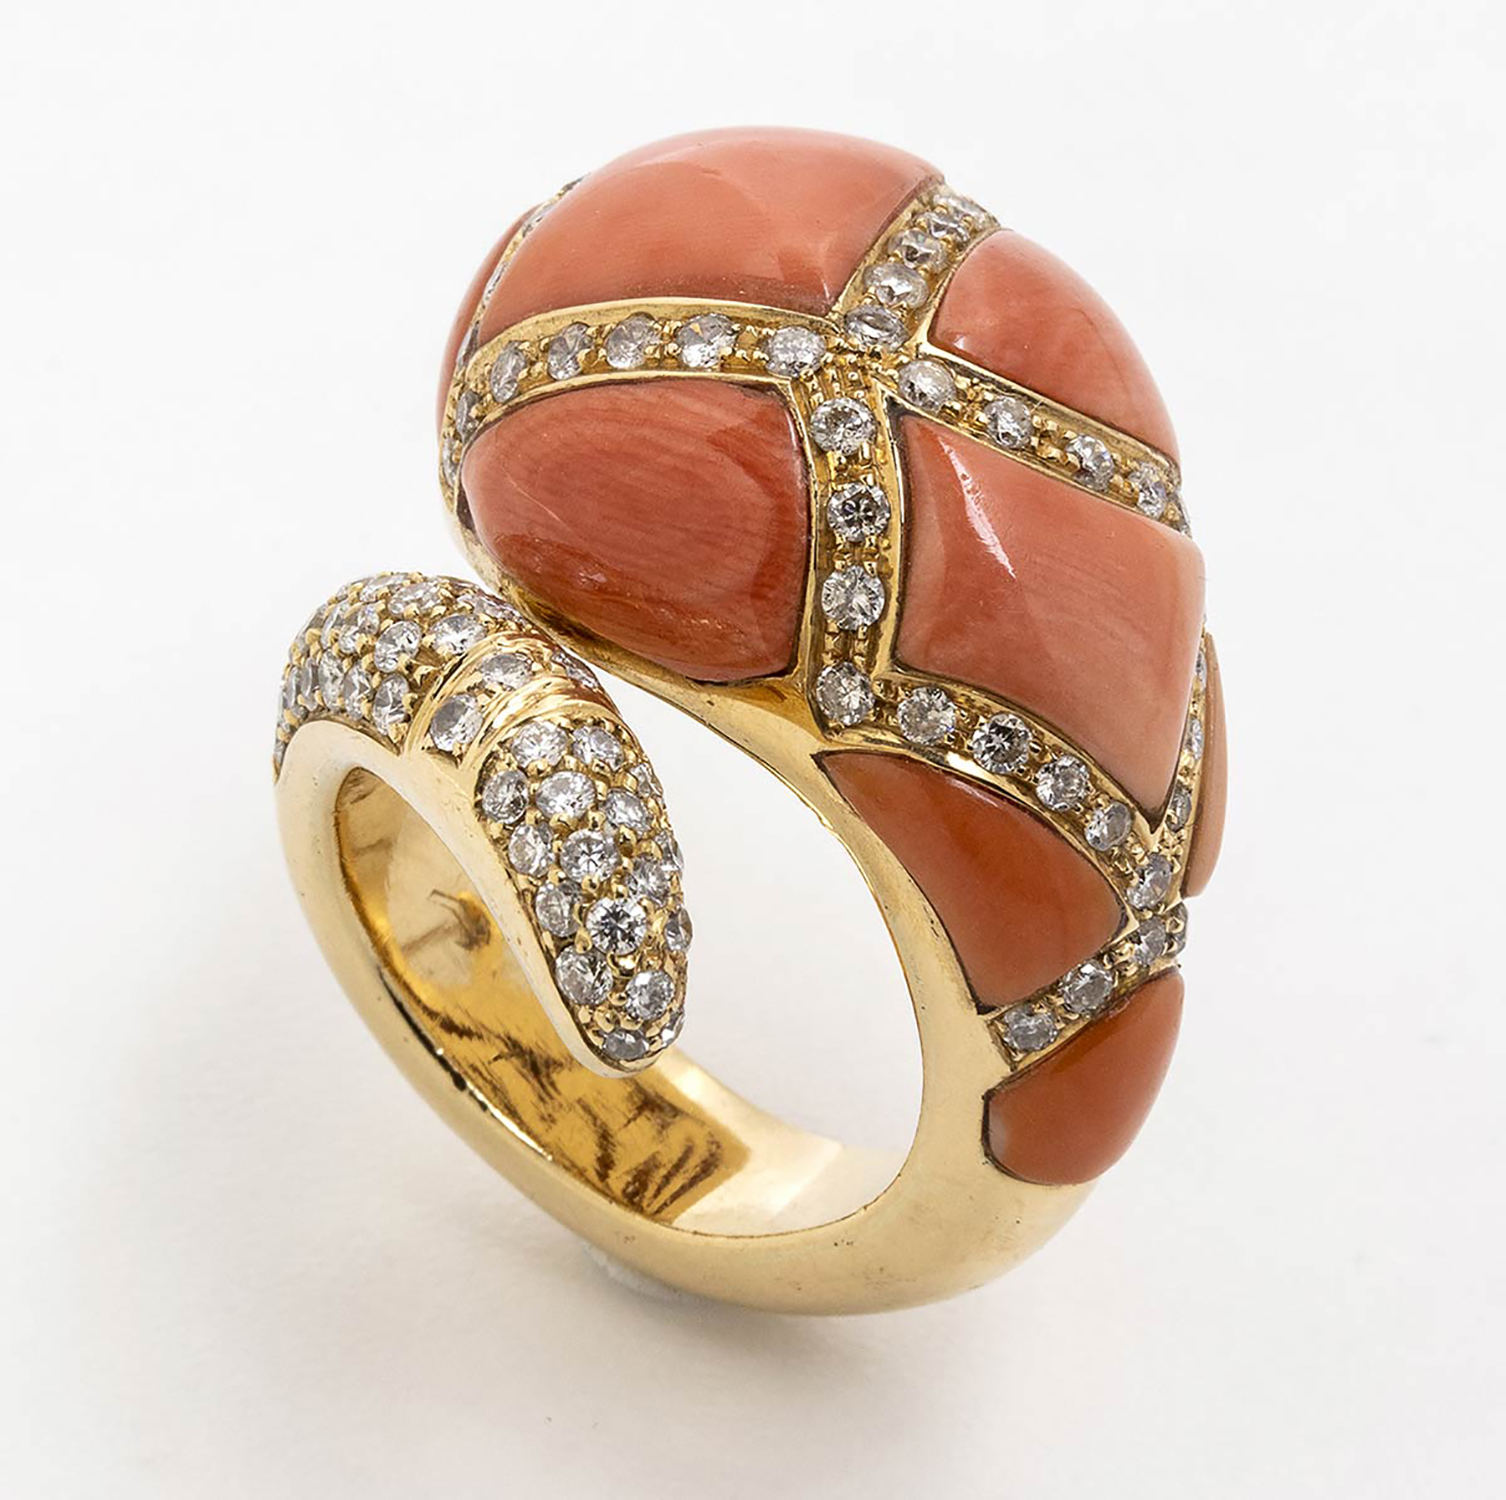 Cerasuolo coral and diamonds ring